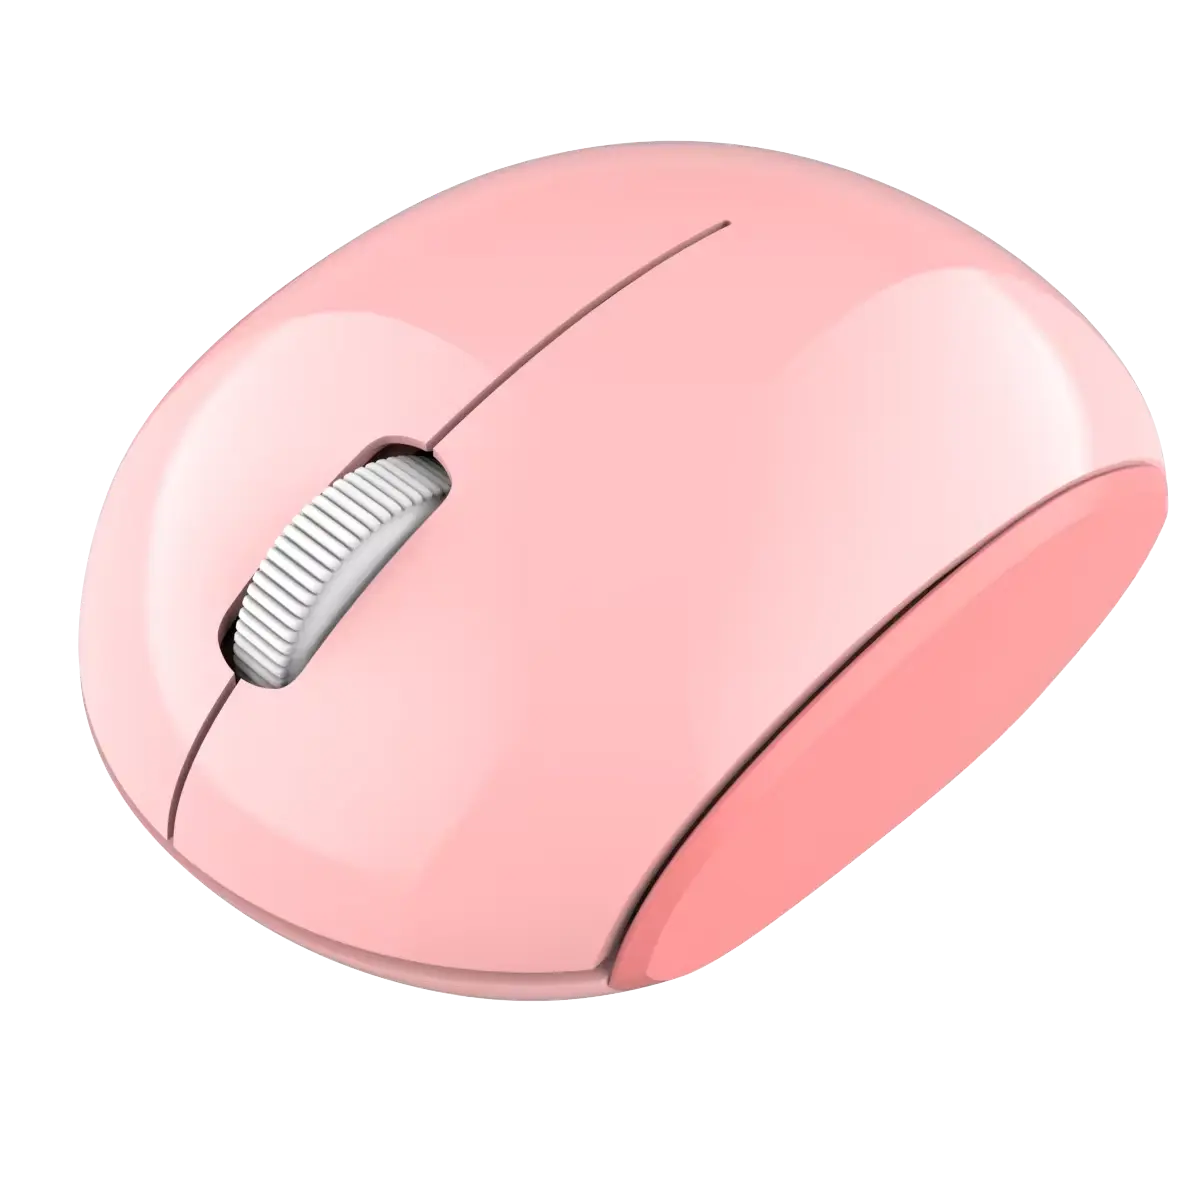 Беспроводная мышь различных цветов подходит для подарка друзья бизнес планшет ноутбук офис